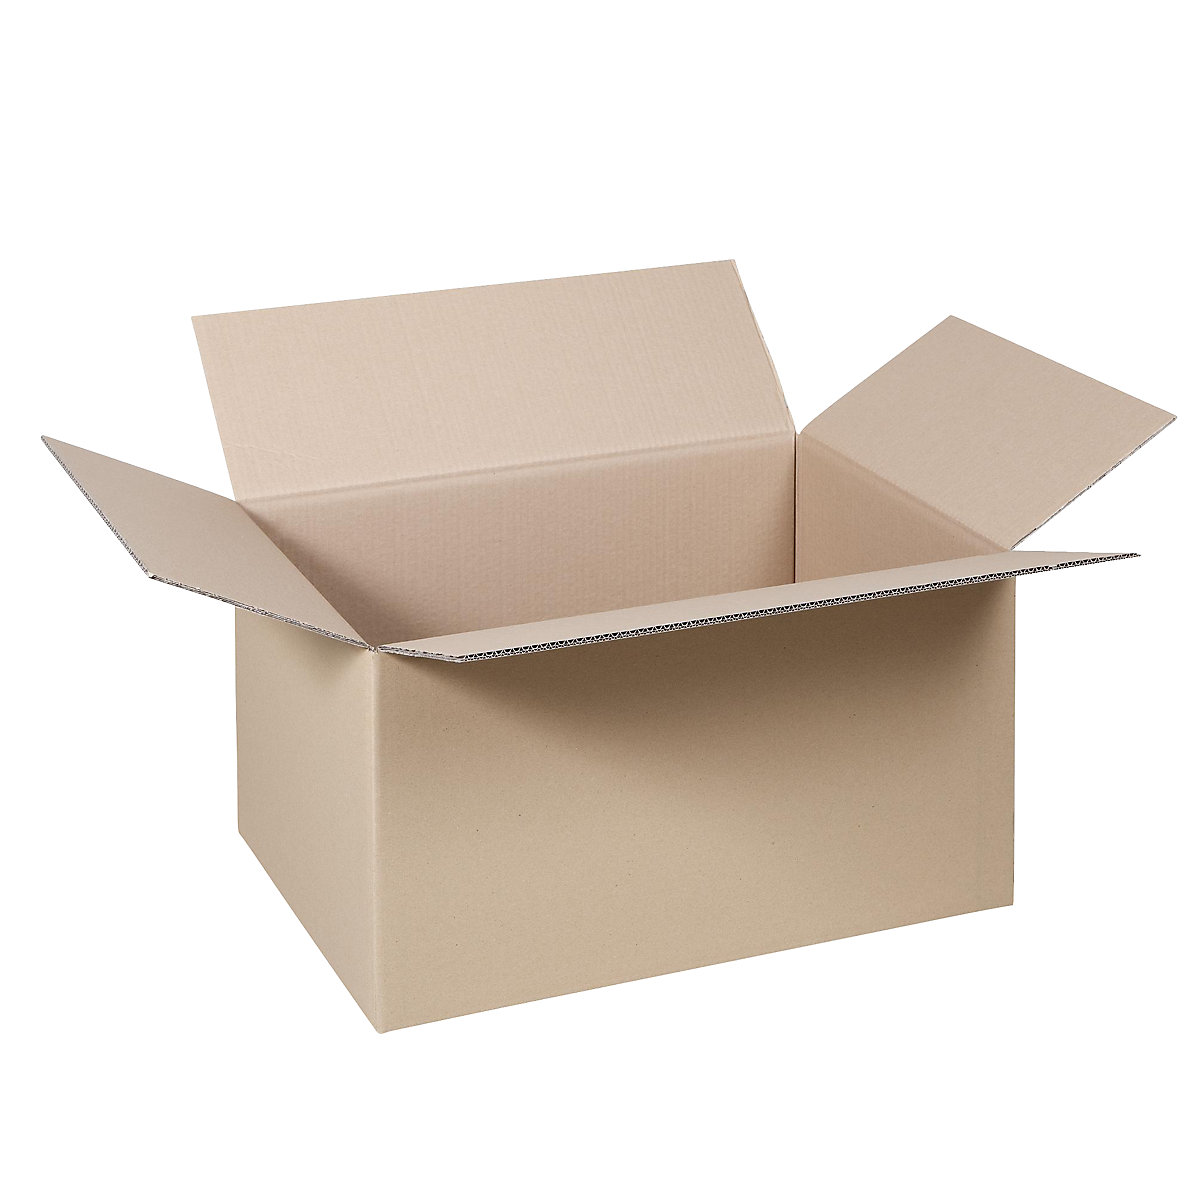 Cutie de carton pliantă, FEFCO 0201, cu 2 straturi de carton ondulat, dimensiuni interioare 500 x 300 x 300 mm, amb. 100 buc.-36